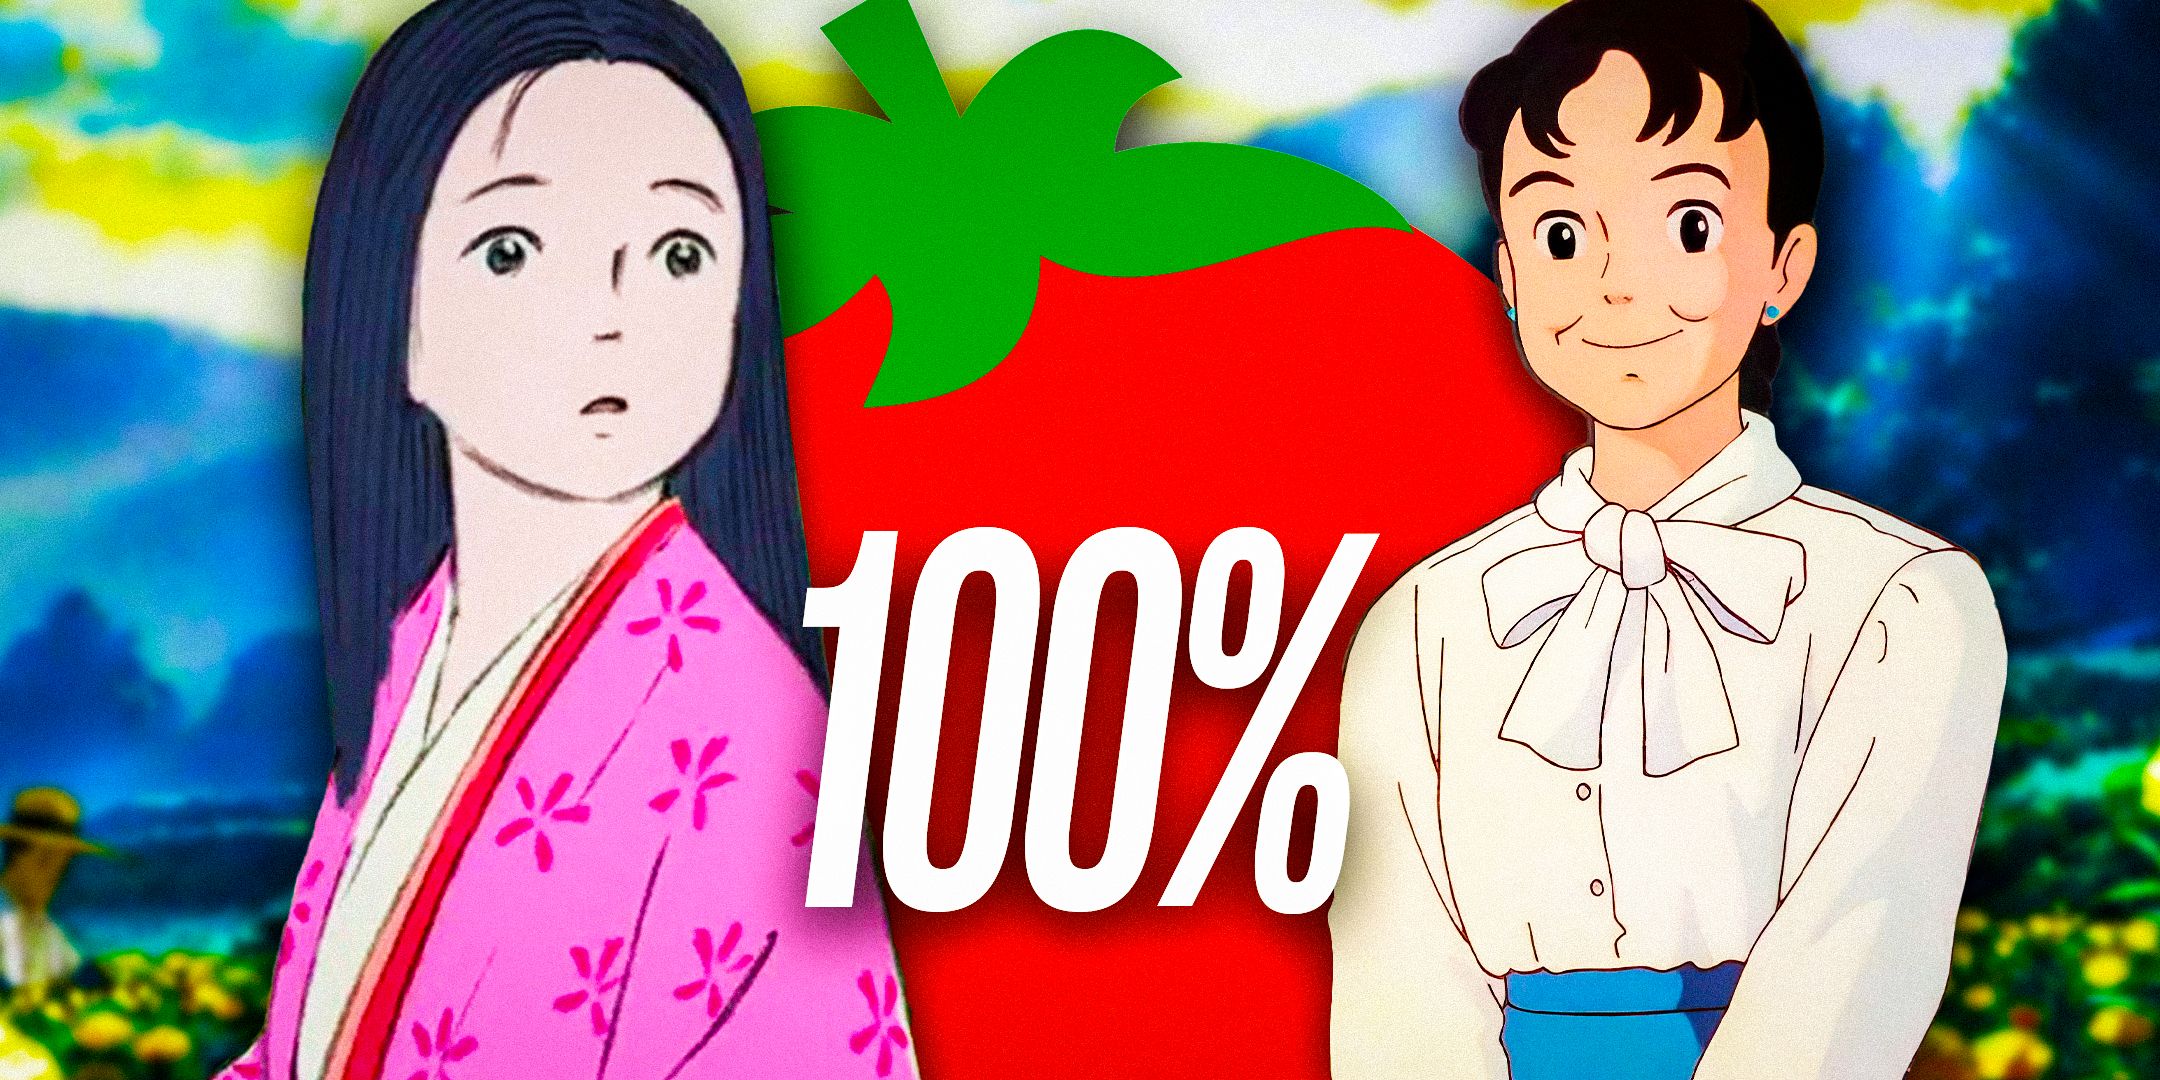 6 анимационных фильмов, на 100% состоящих из тухлых помидоров